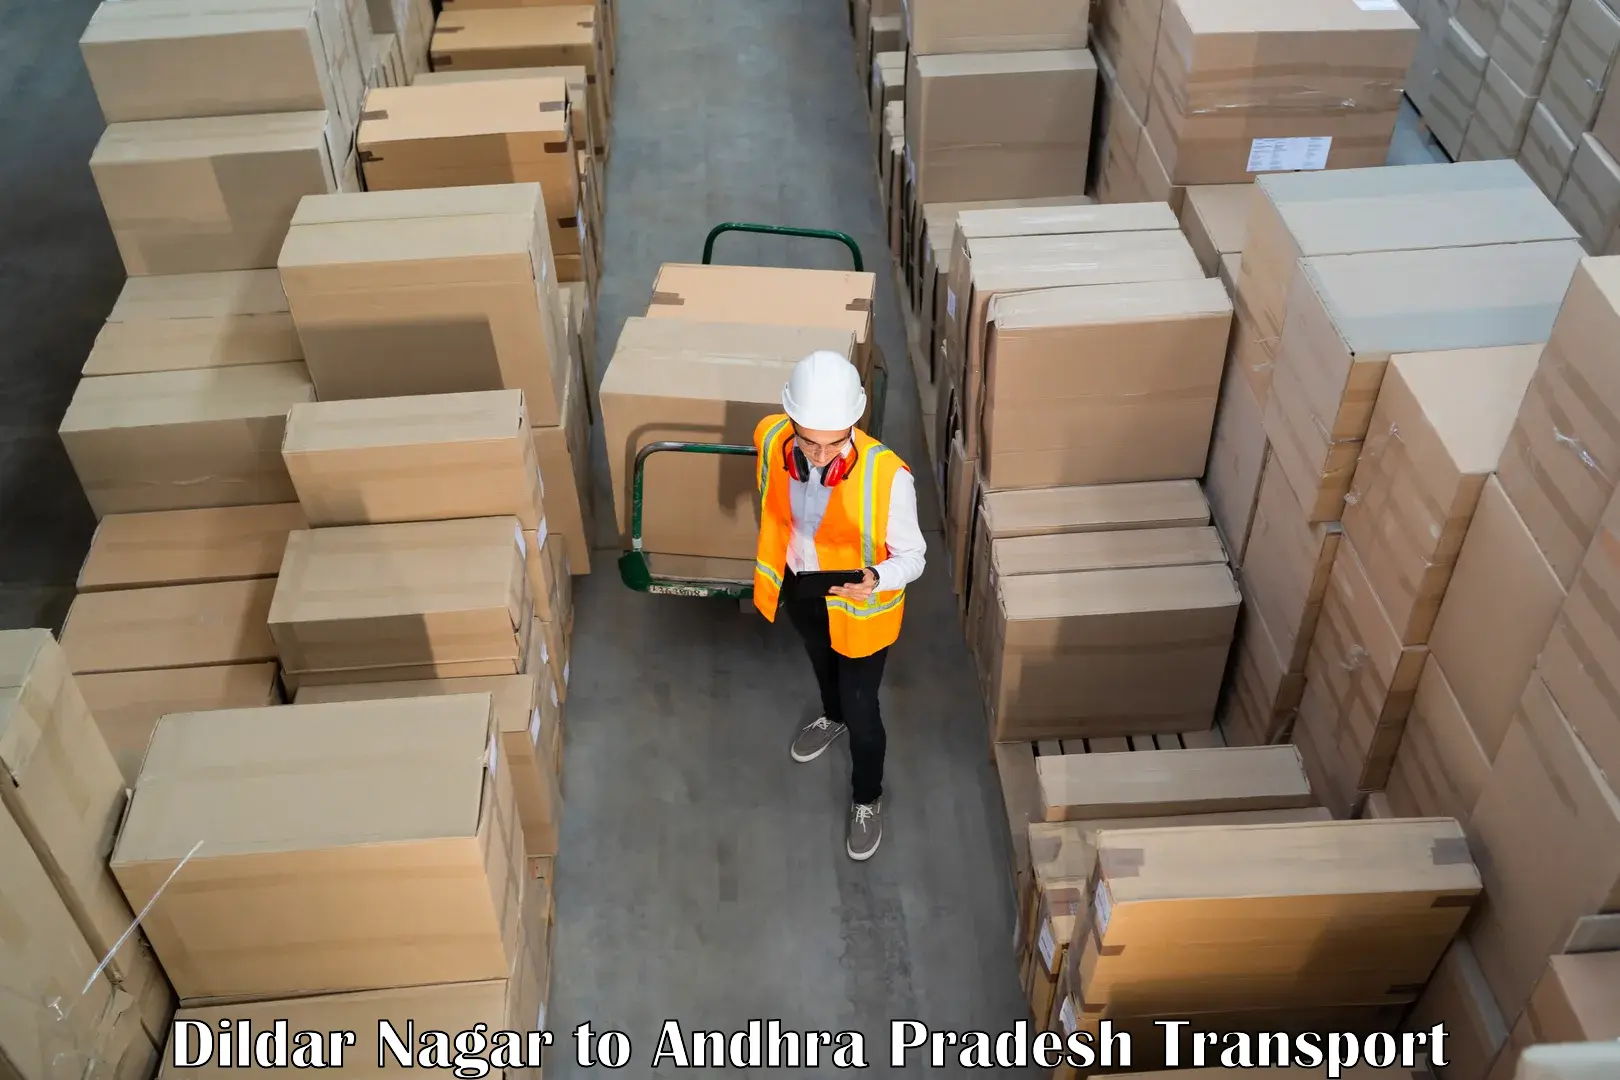 Container transport service Dildar Nagar to Kambadur